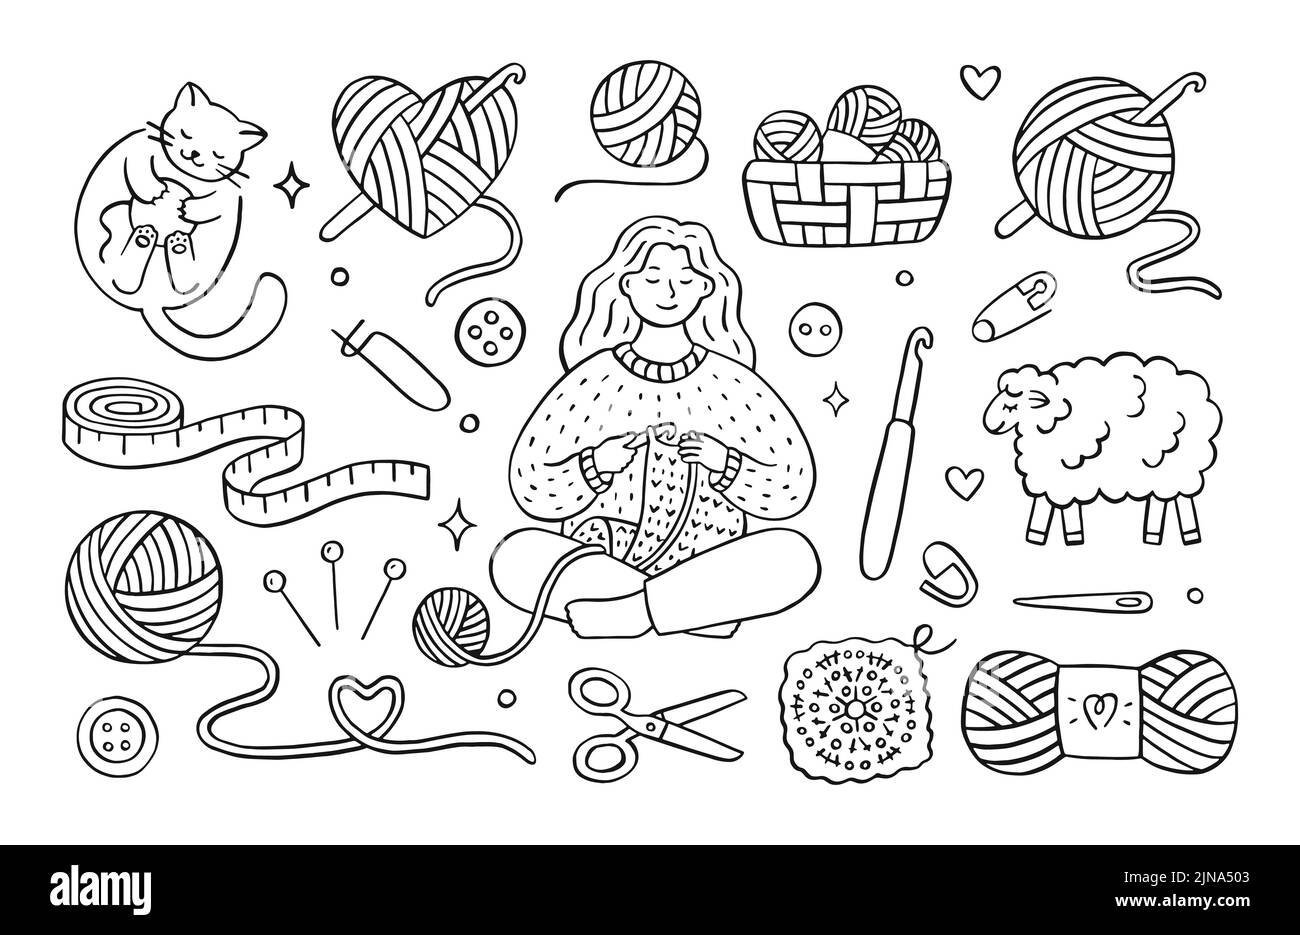 Crochet doodle illustration de filles tricoting vêtements, chat jouant avec laine fil balle, mouton, crochet, skein. Dessin à la main, joli dessin à la main Illustration de Vecteur